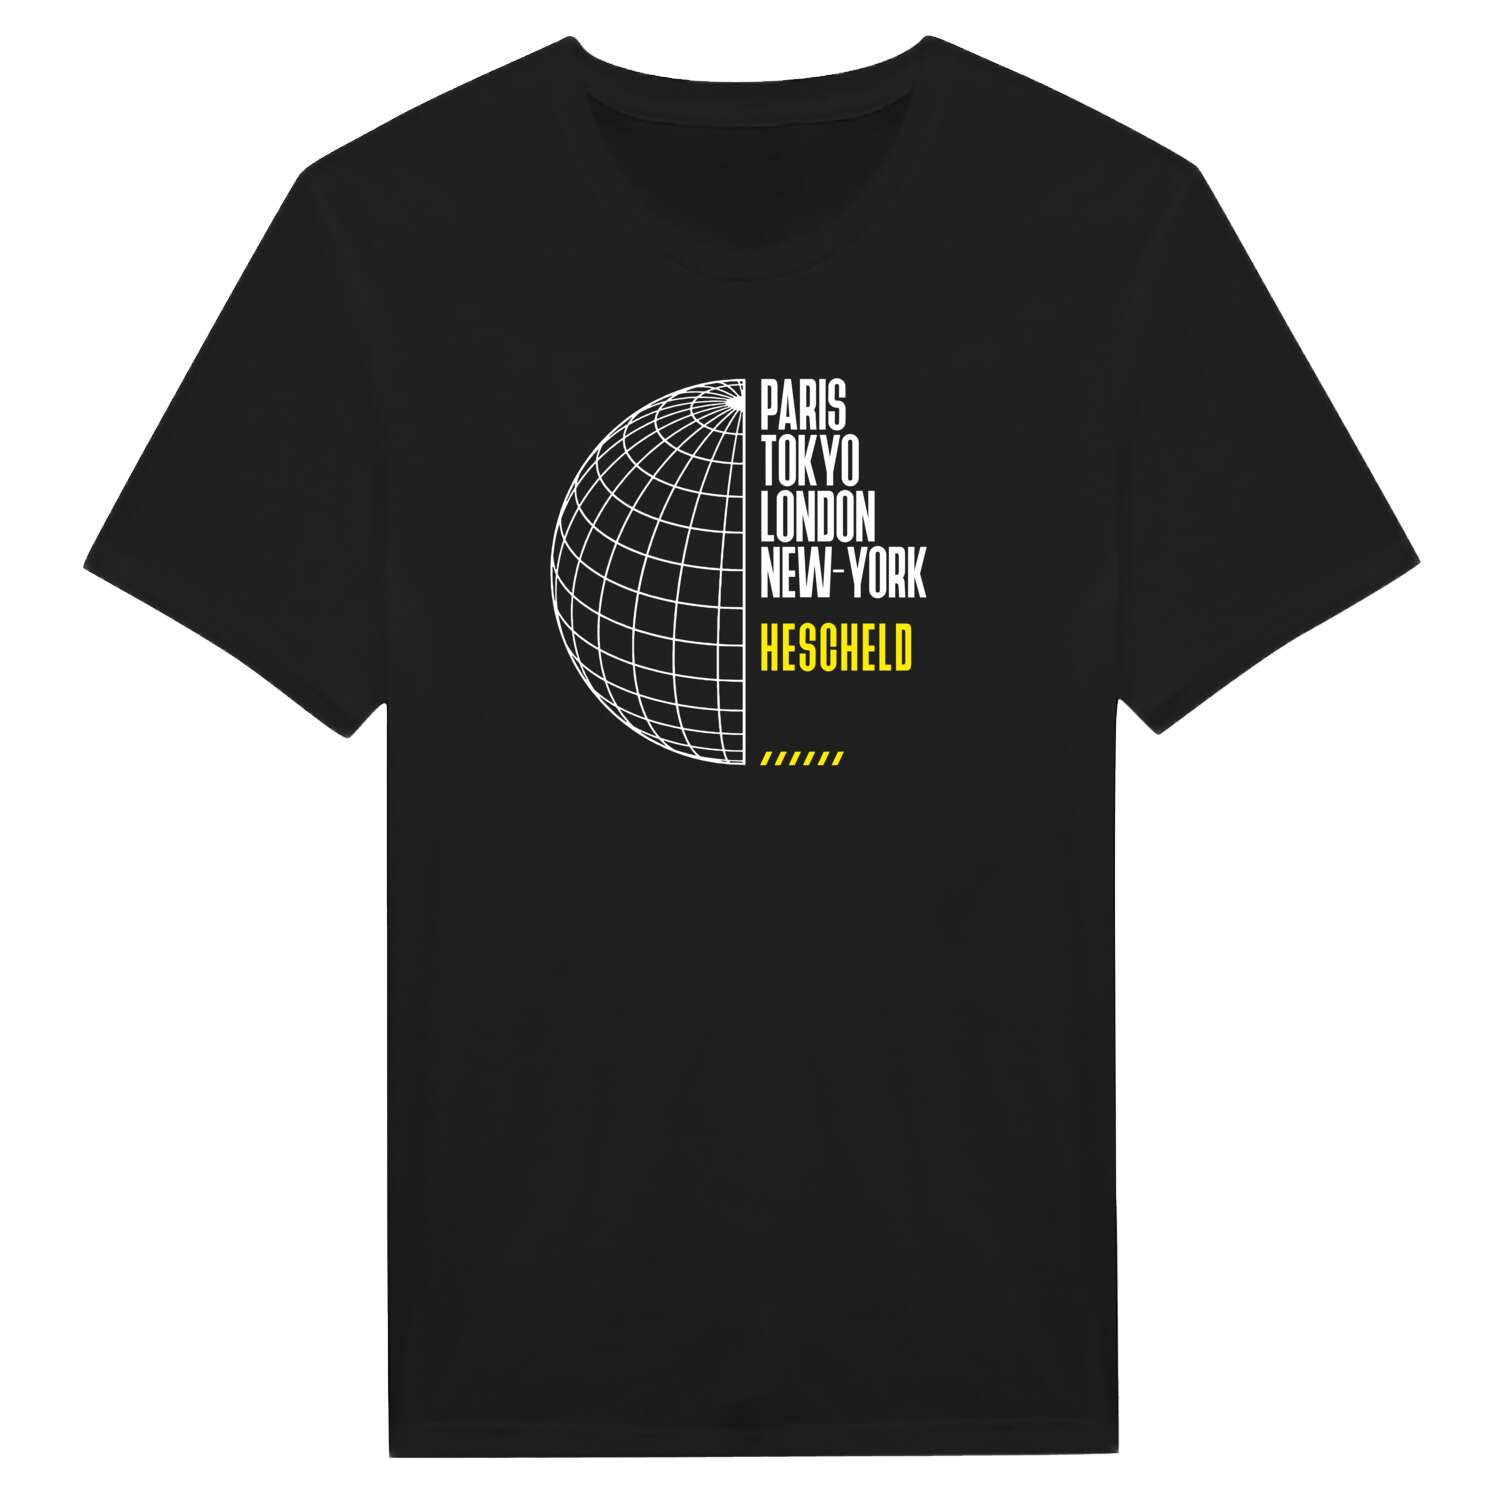 Hescheld T-Shirt »Paris Tokyo London«